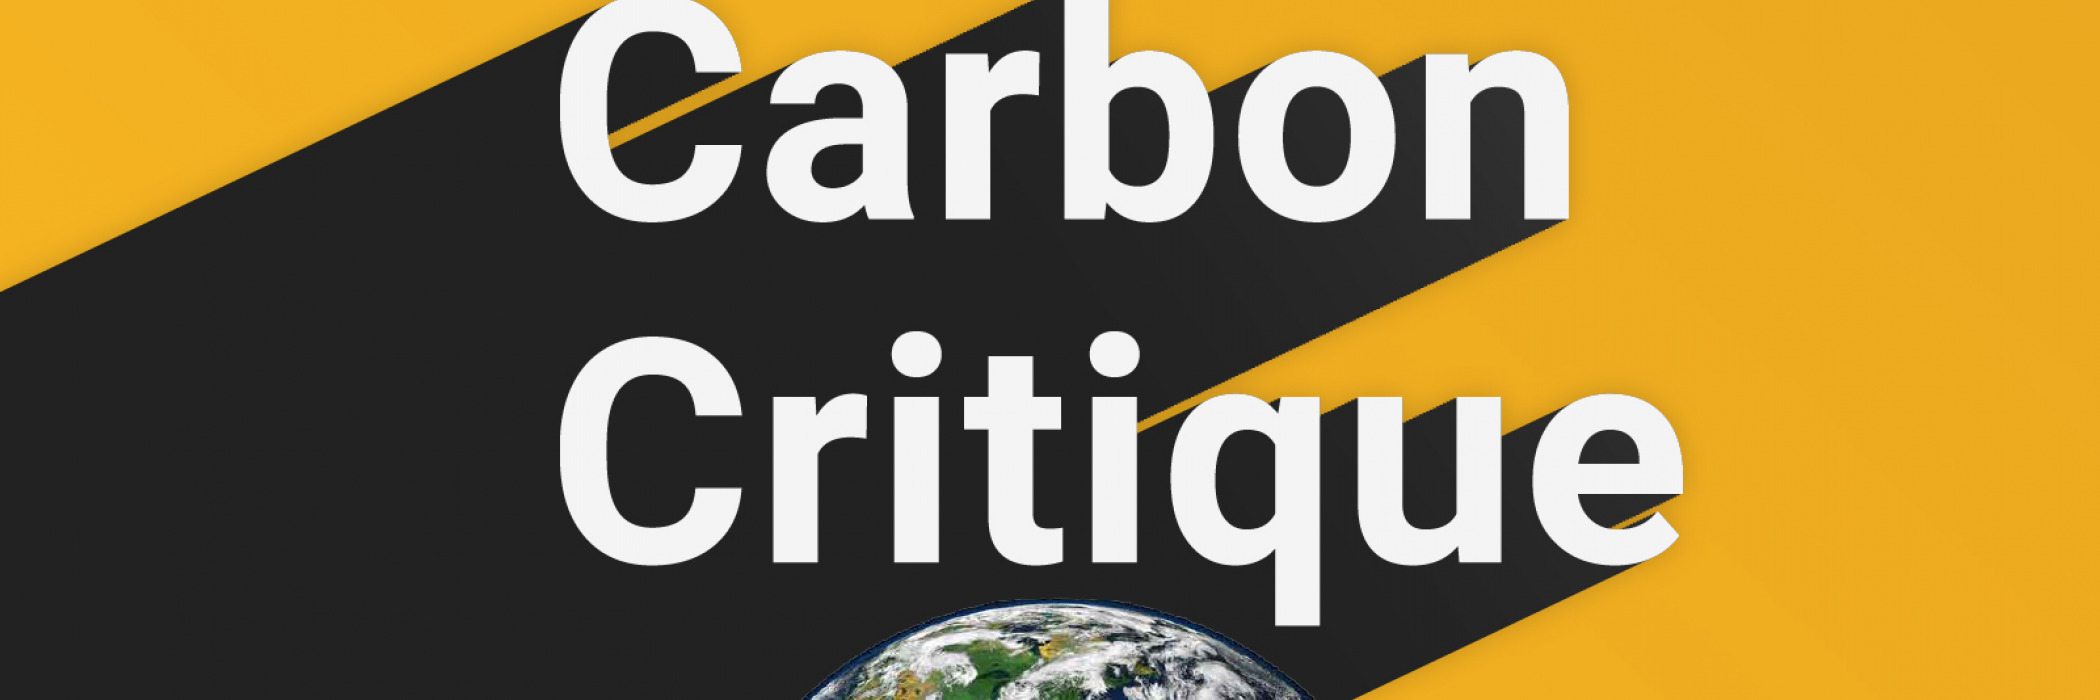 Carbon Critique Podcast